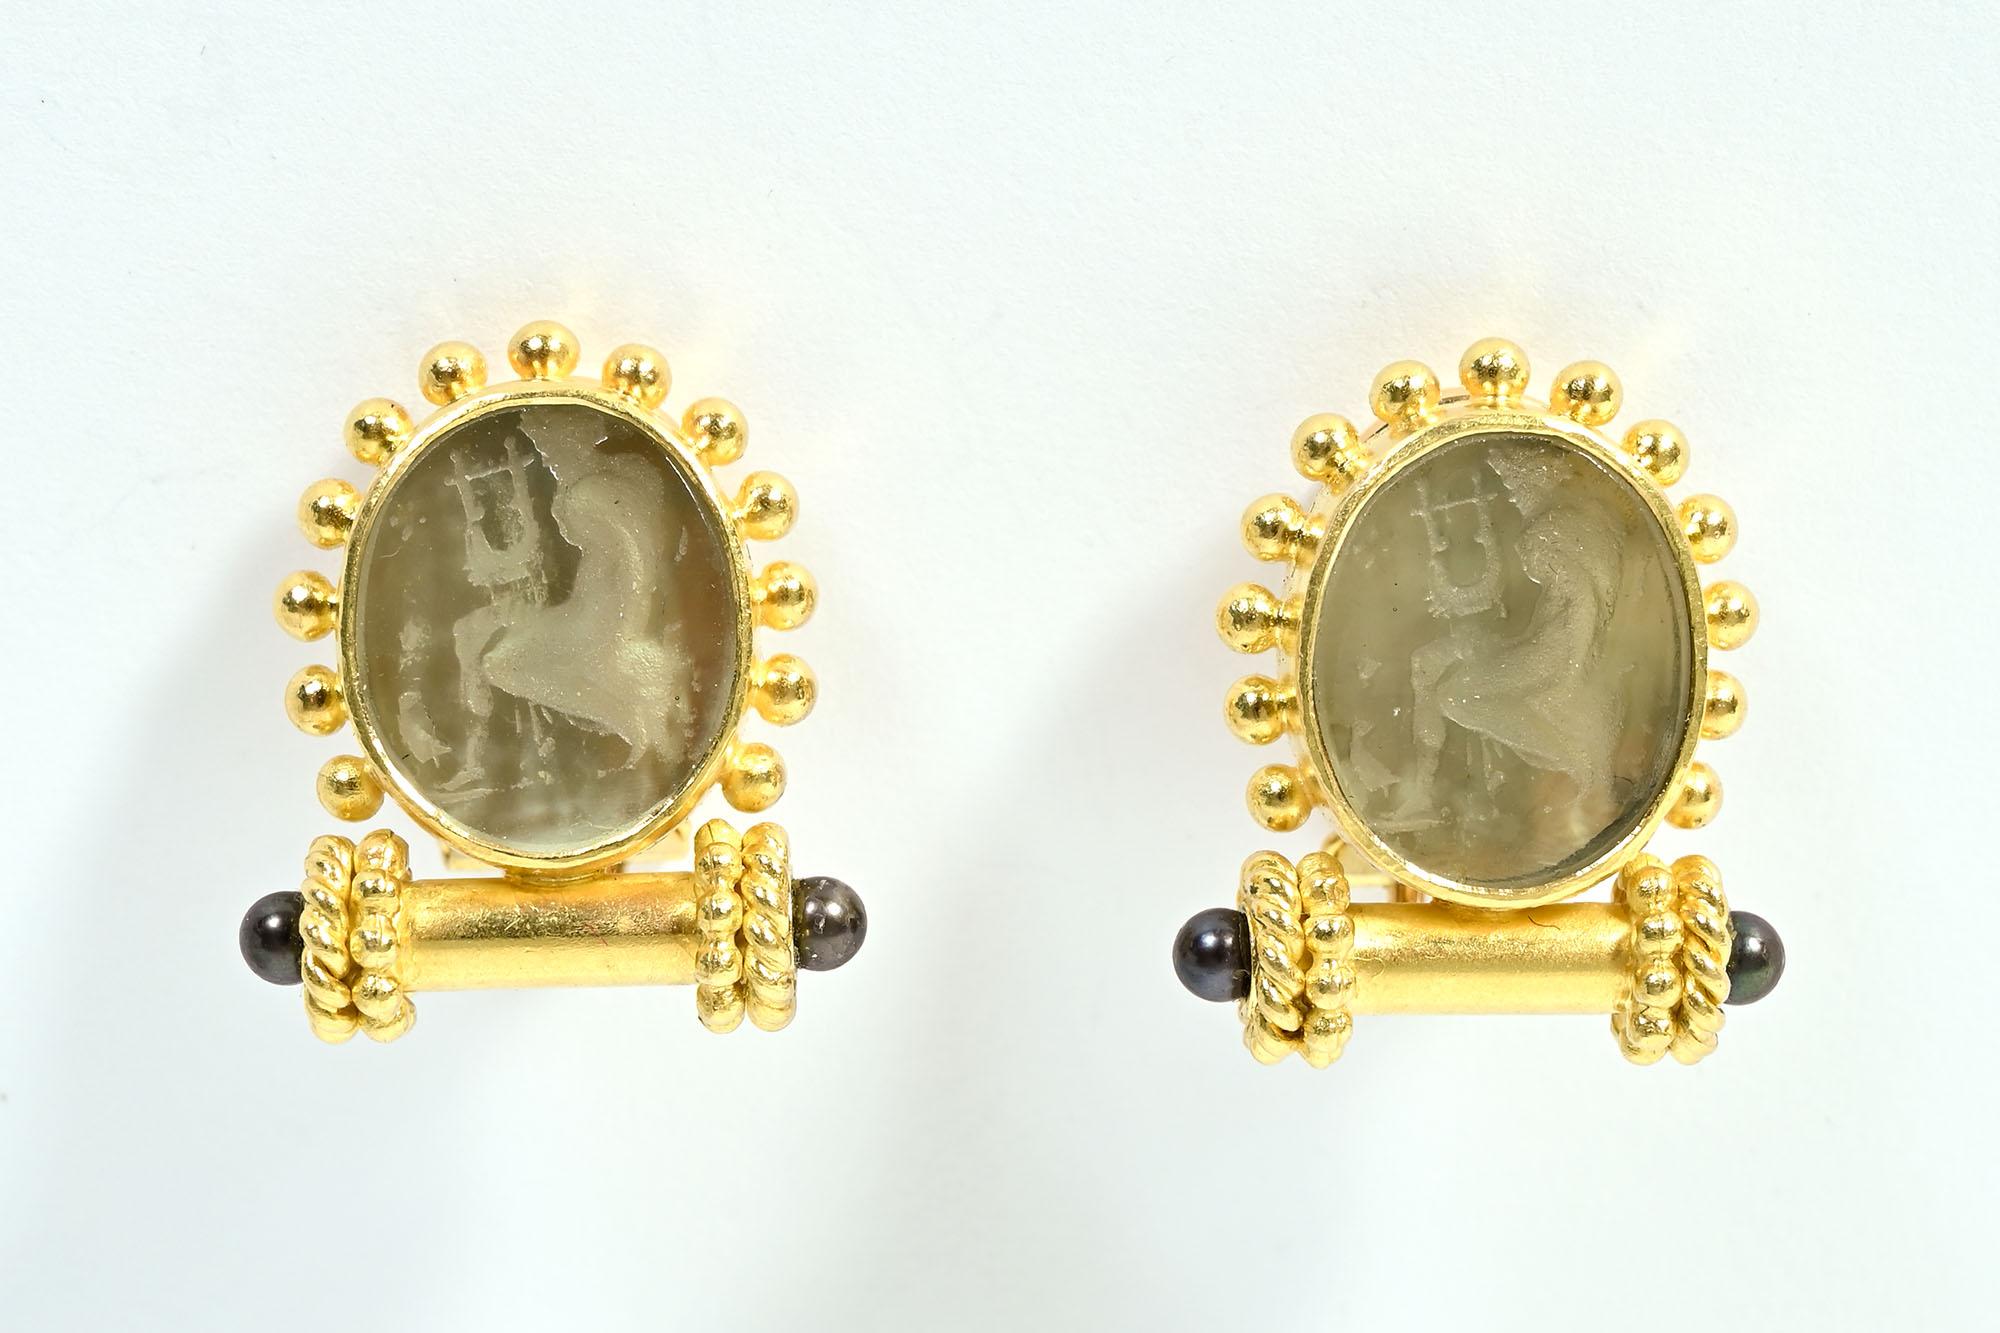 Die Ohrringe von Elizabeth Locke zeigen eines ihrer klassischen Lieblingsthemen: eine Frau, die eine Leier spielt. Die profilierte Stichtiefdruckfigur ist in grünes Glas geätzt und mit Goldkugeln umgeben. Darunter befindet sich ein runder